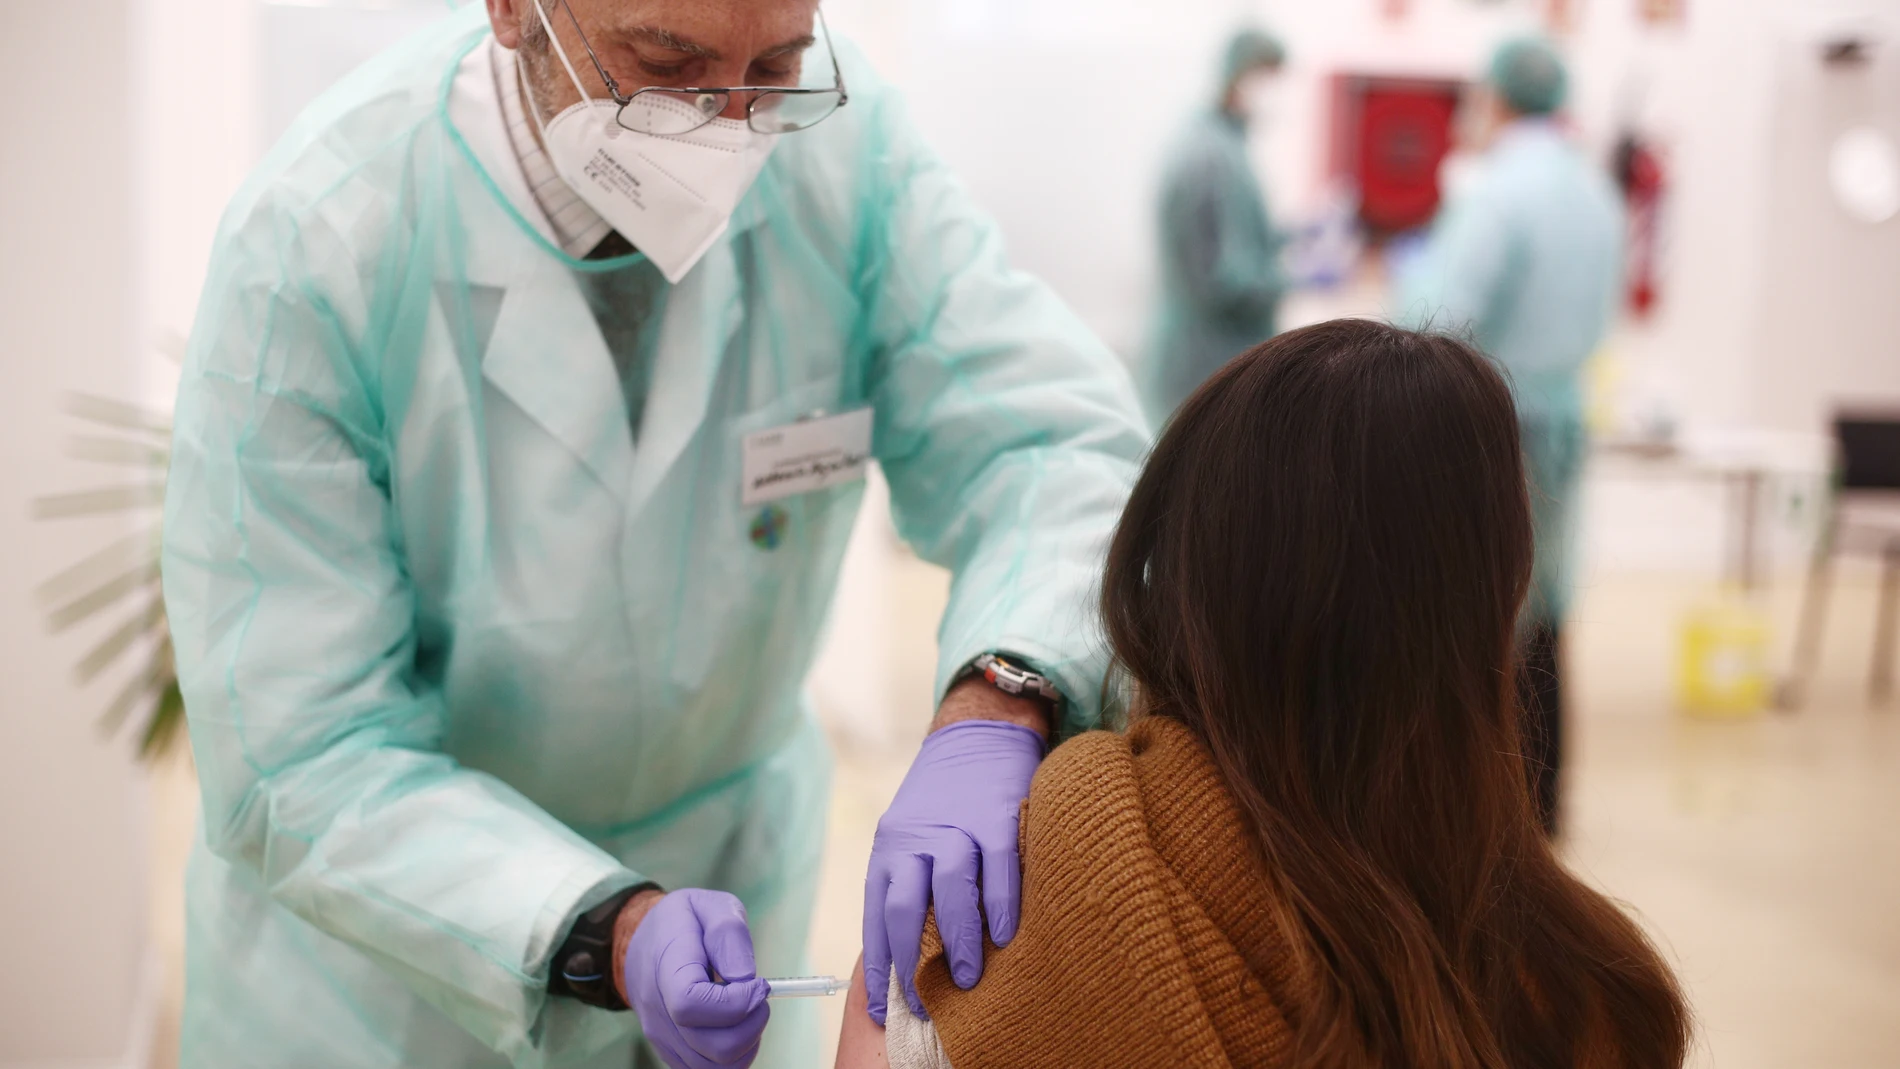 Una profesional farmacéutica recibe la vacuna contra la COVID-19, en la sede del Colegio Oficial de Farmacéuticos de Madrid (COFM), en Madrid